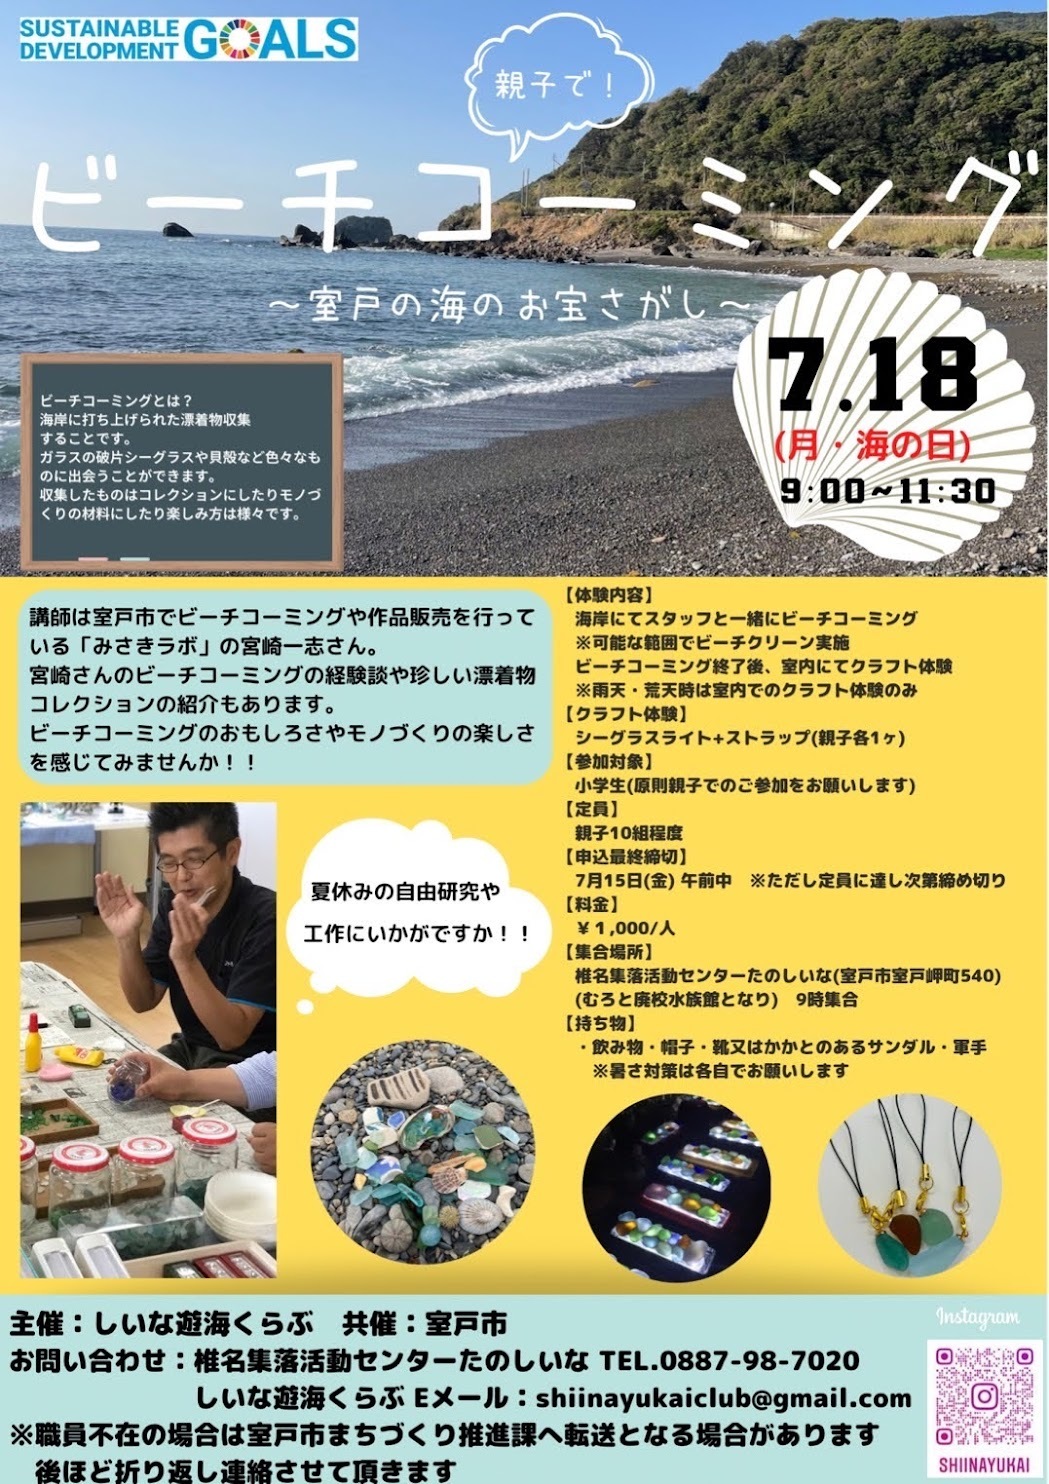 主催のしいな遊海くらぶは室戸の漁業文化や海辺の街ならではの発信を行う地域団体です。